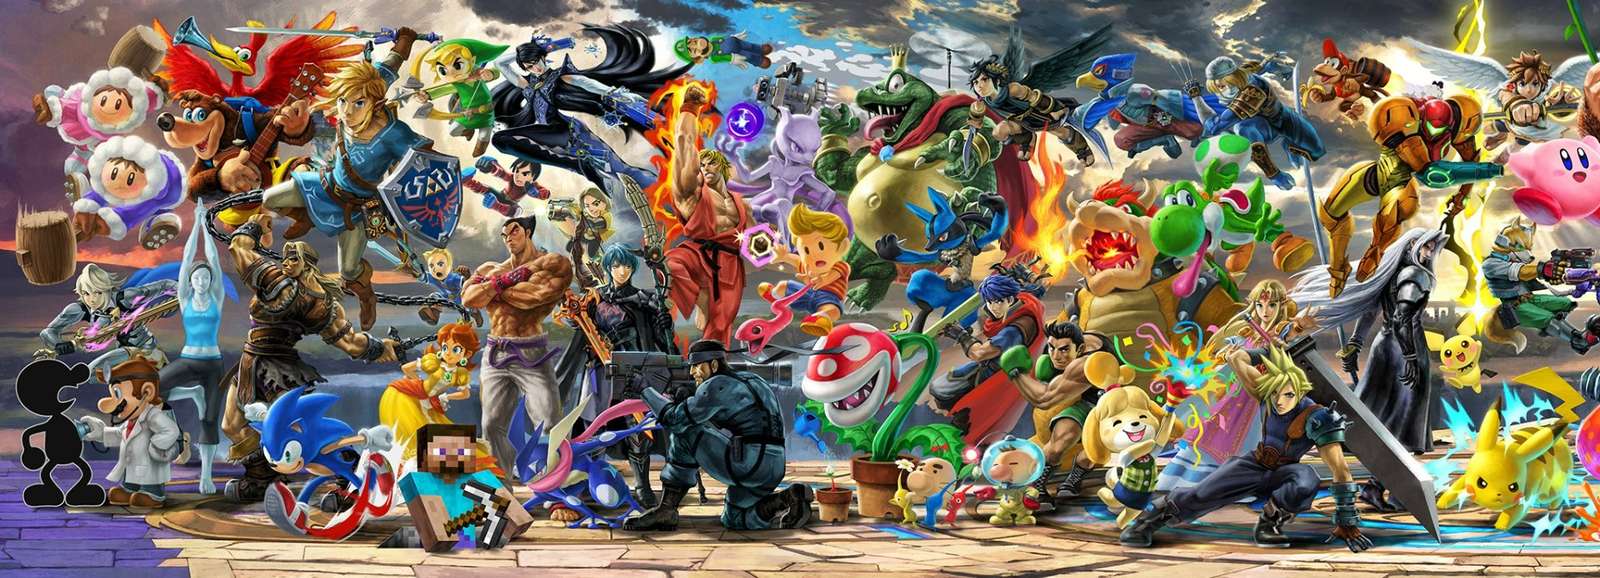 Pictura murală Super Smash Bros Ultimate, jumătatea stângă jigsaw puzzle online